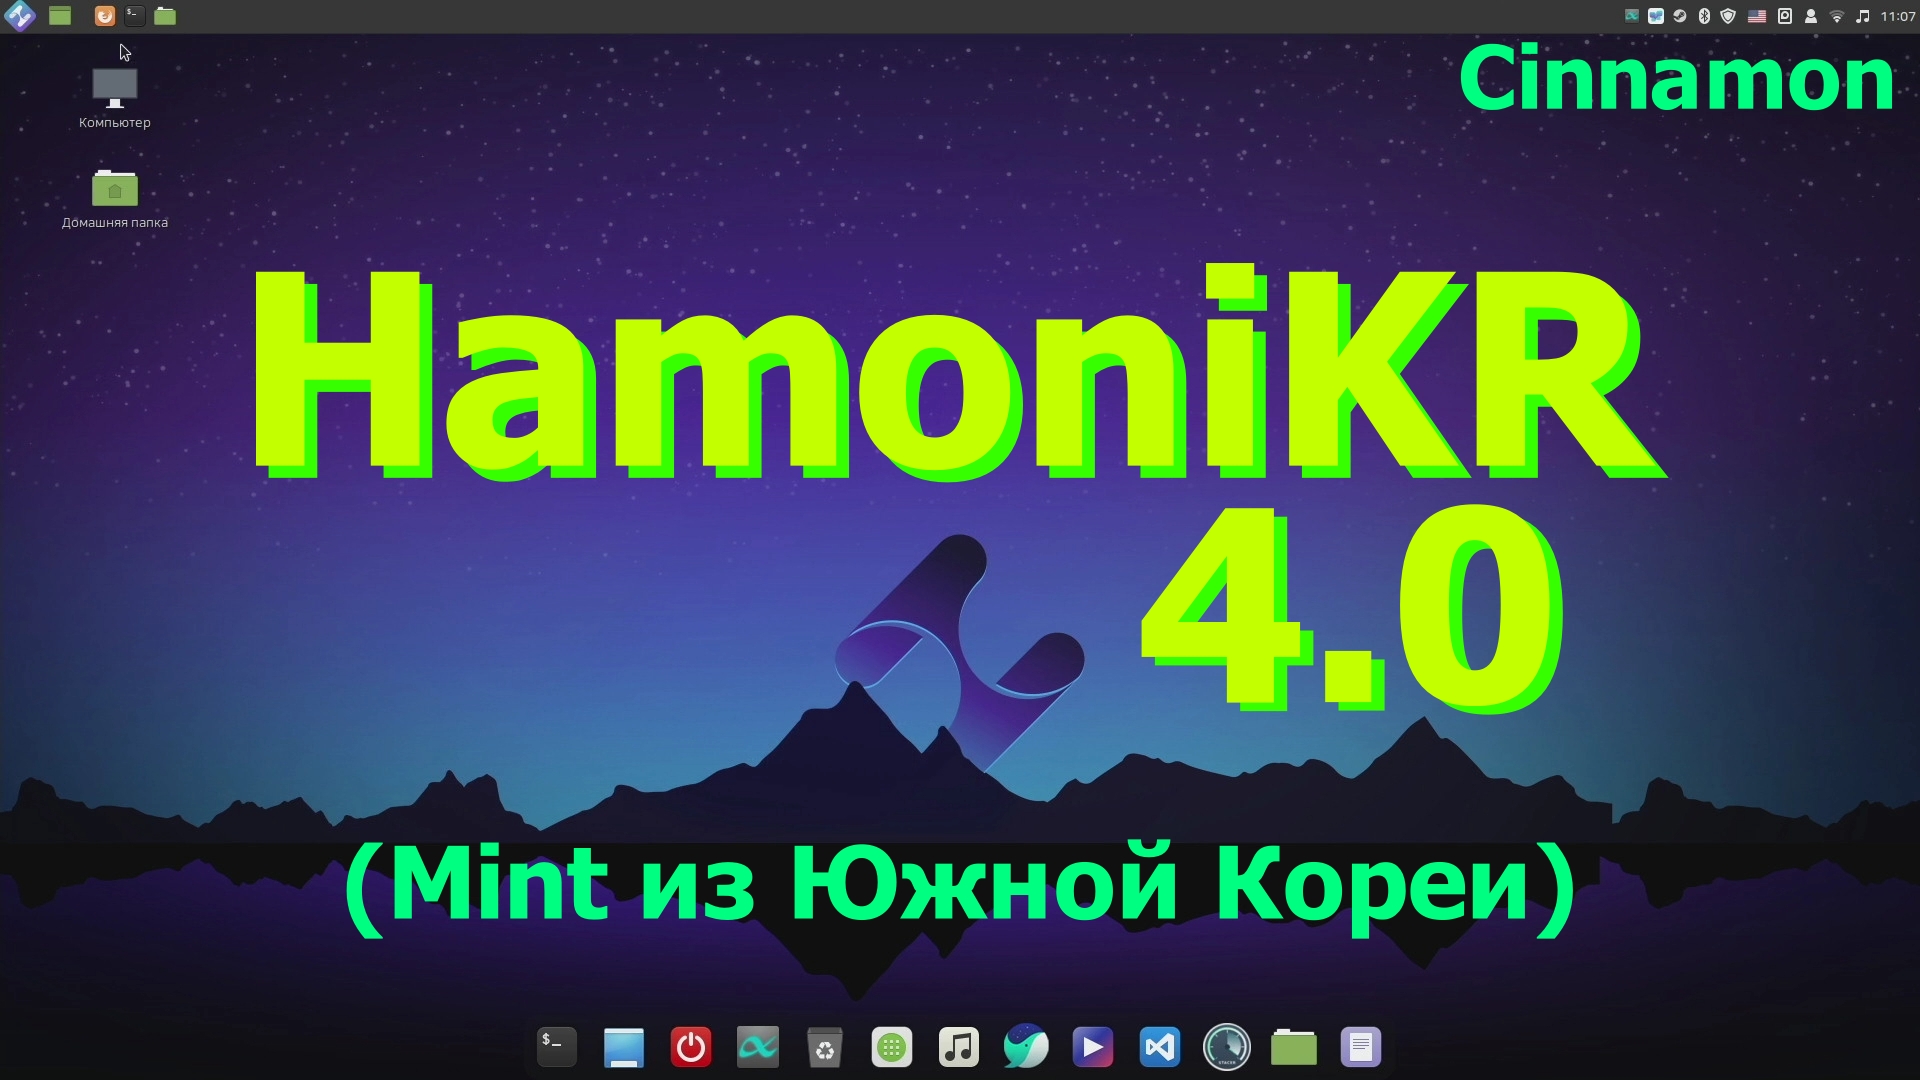 Дистрибутив HamoniKR 4.0 (Cinnamon) Установка, обновление и первый взгляд (Апрель 2021)